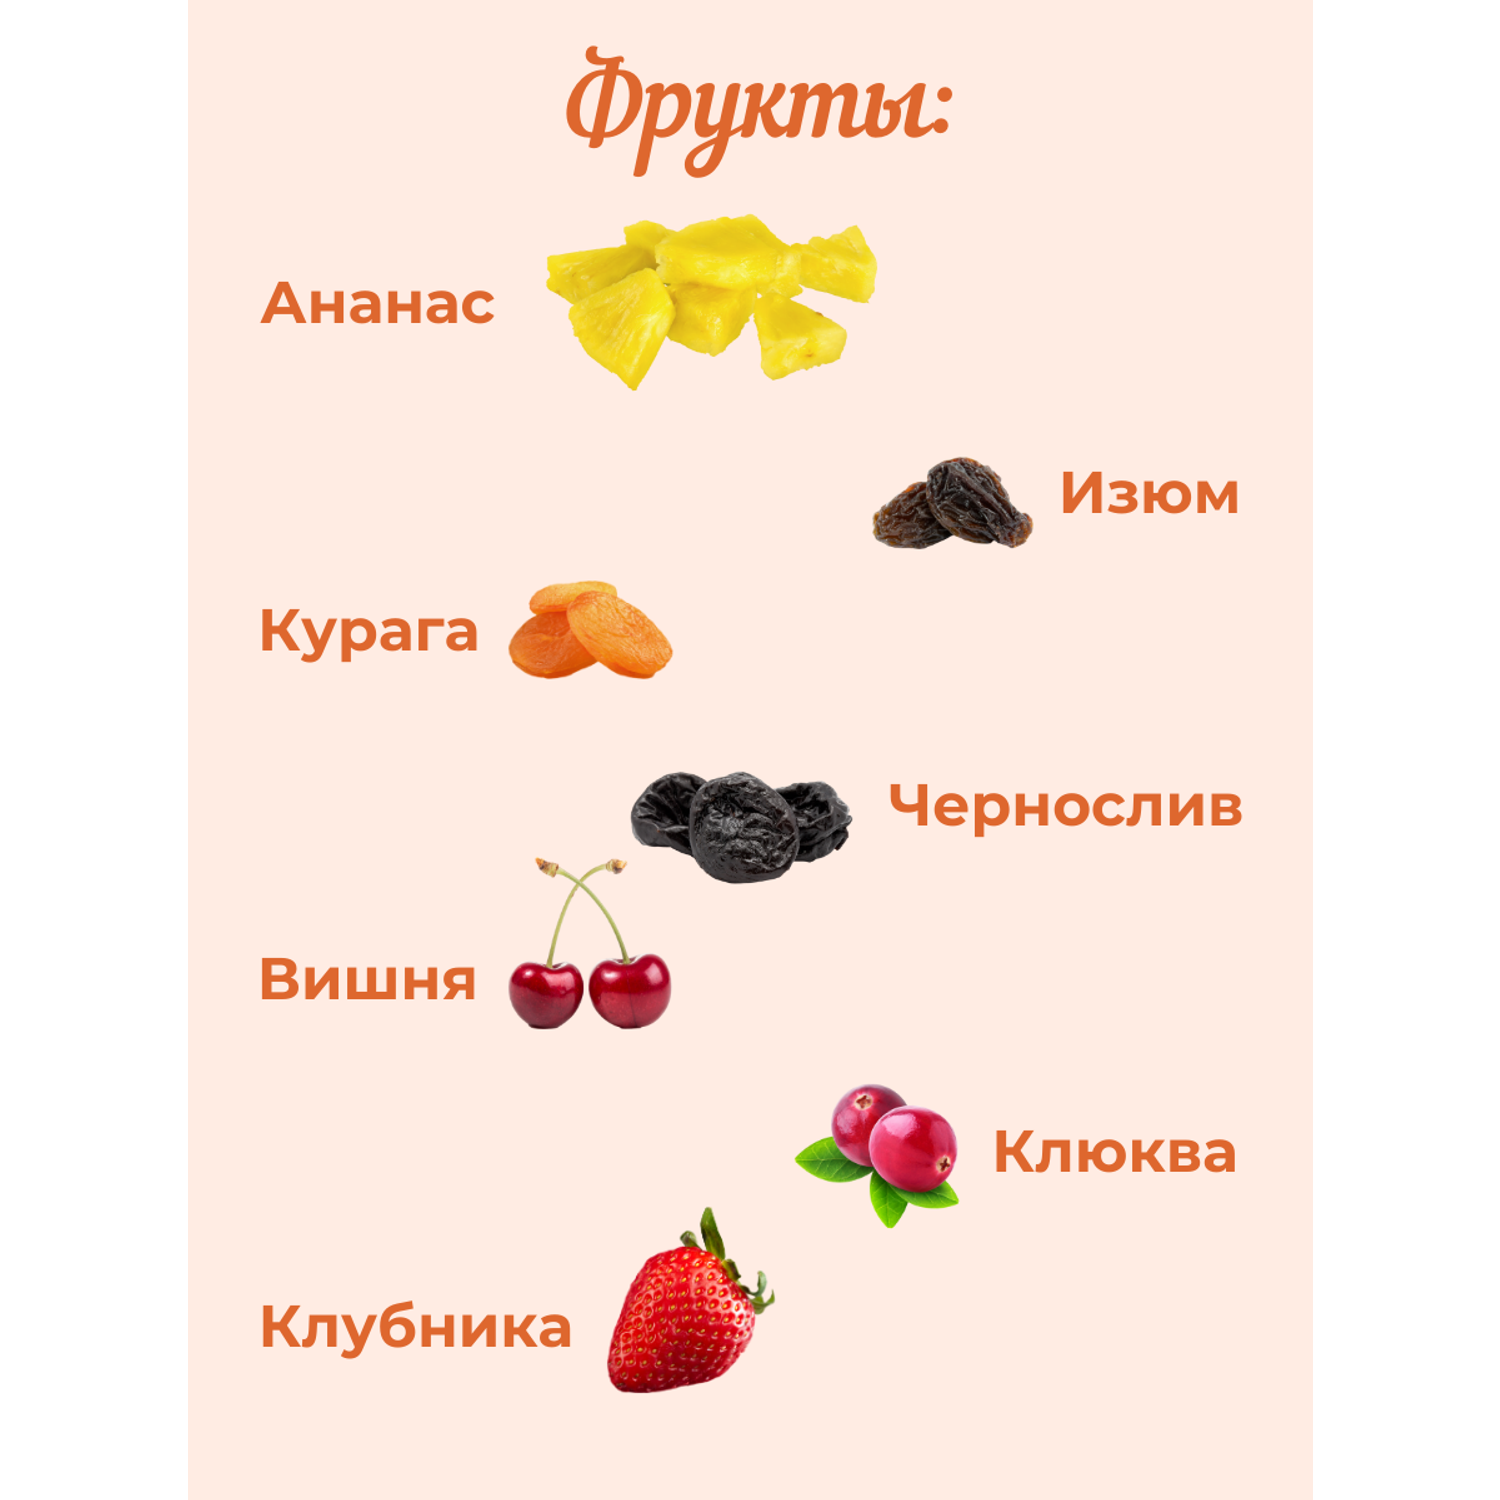 12 ягод и орехов в шоколаде Сладости от Юрича 500гр - фото 5